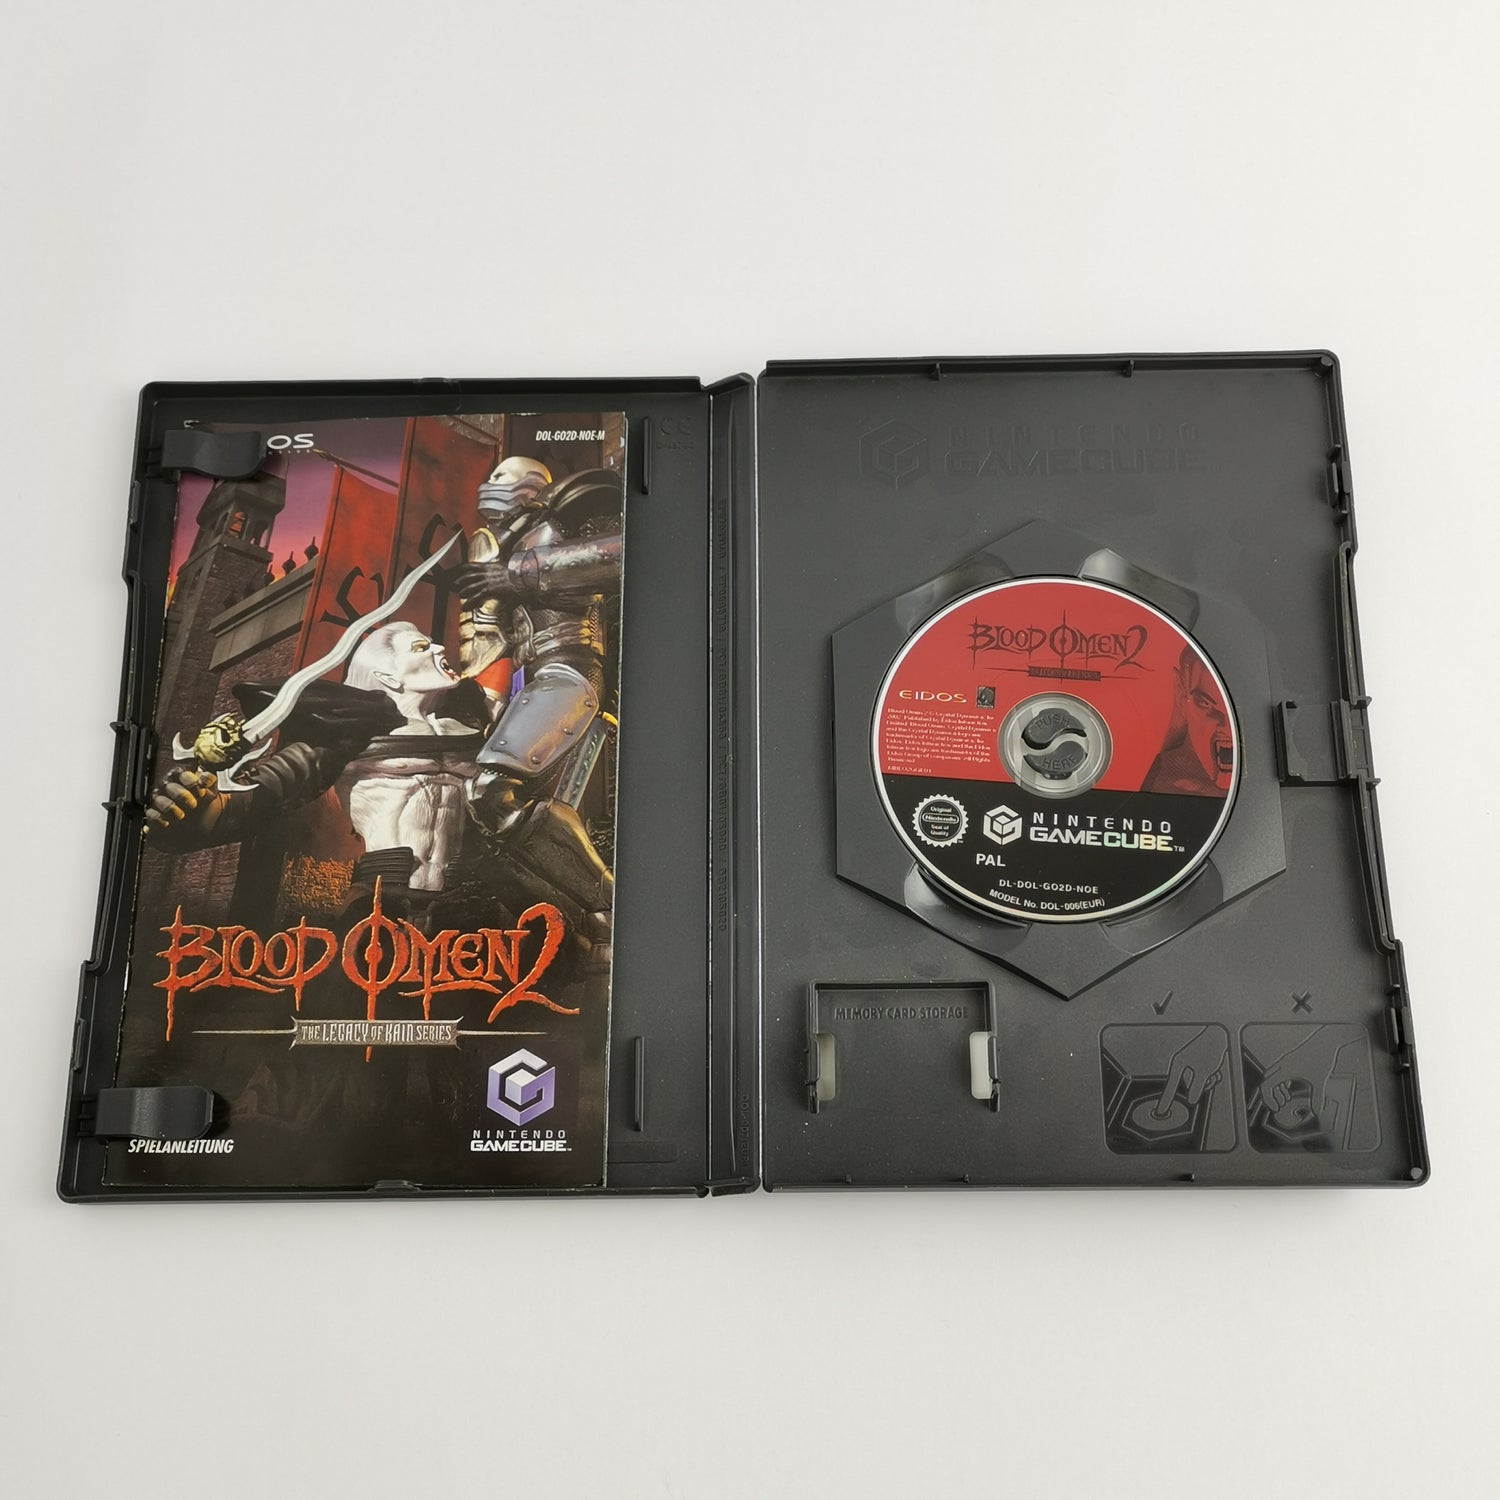 Nintendo Gamecube Game: Blood Omen 2 - Legacy of Kain Series | Original packaging PAL version